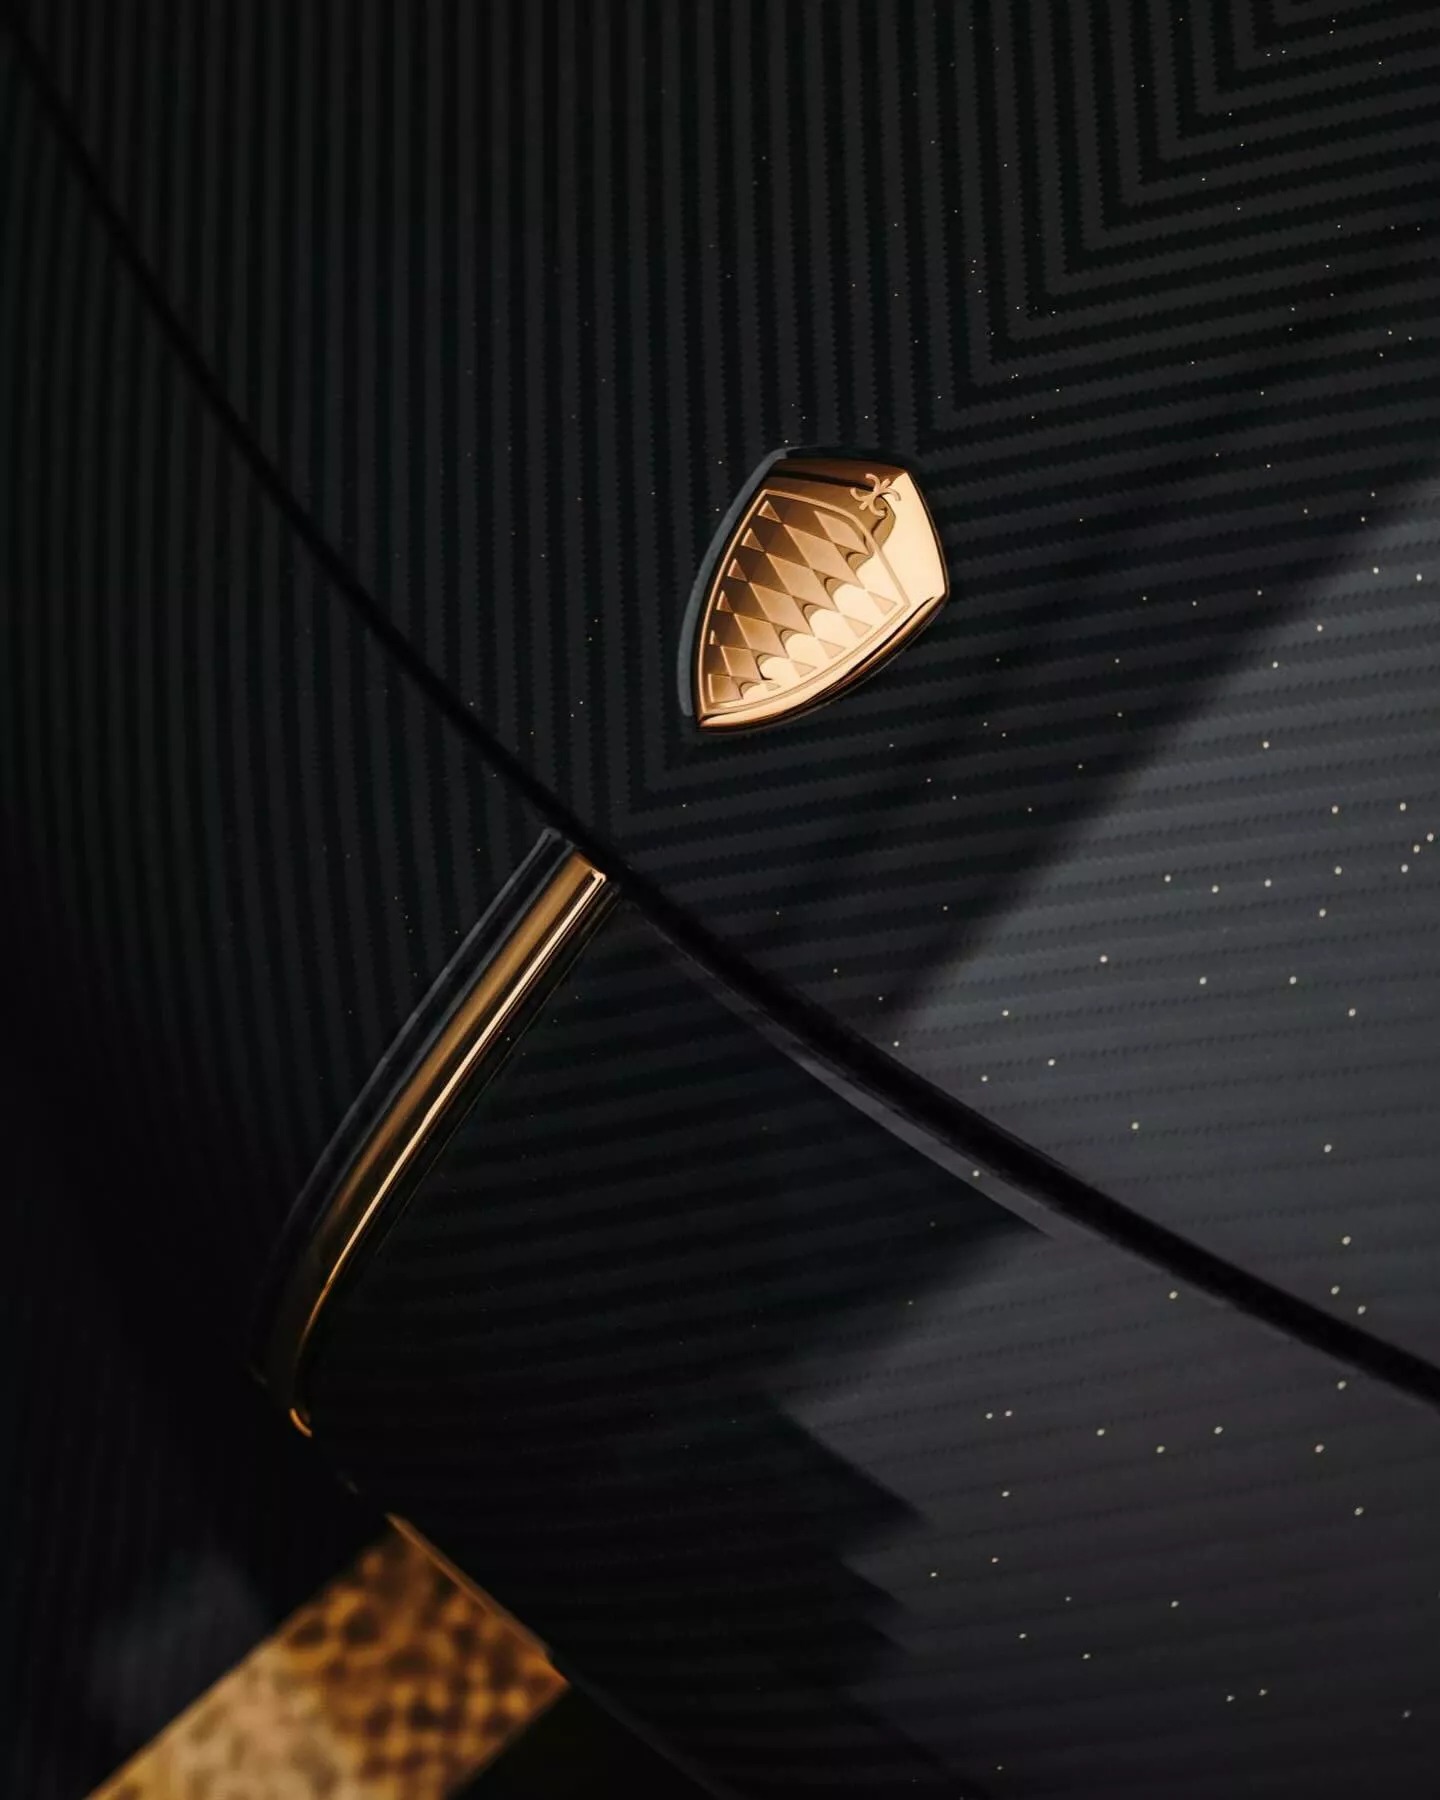 Đại gia bất động sản chơi siêu xe Koenigsegg khác người: Rắc bột vàng lên khắp vỏ carbon, mạ vàng 24k nhiều chi tiết ngoại thất- Ảnh 9.